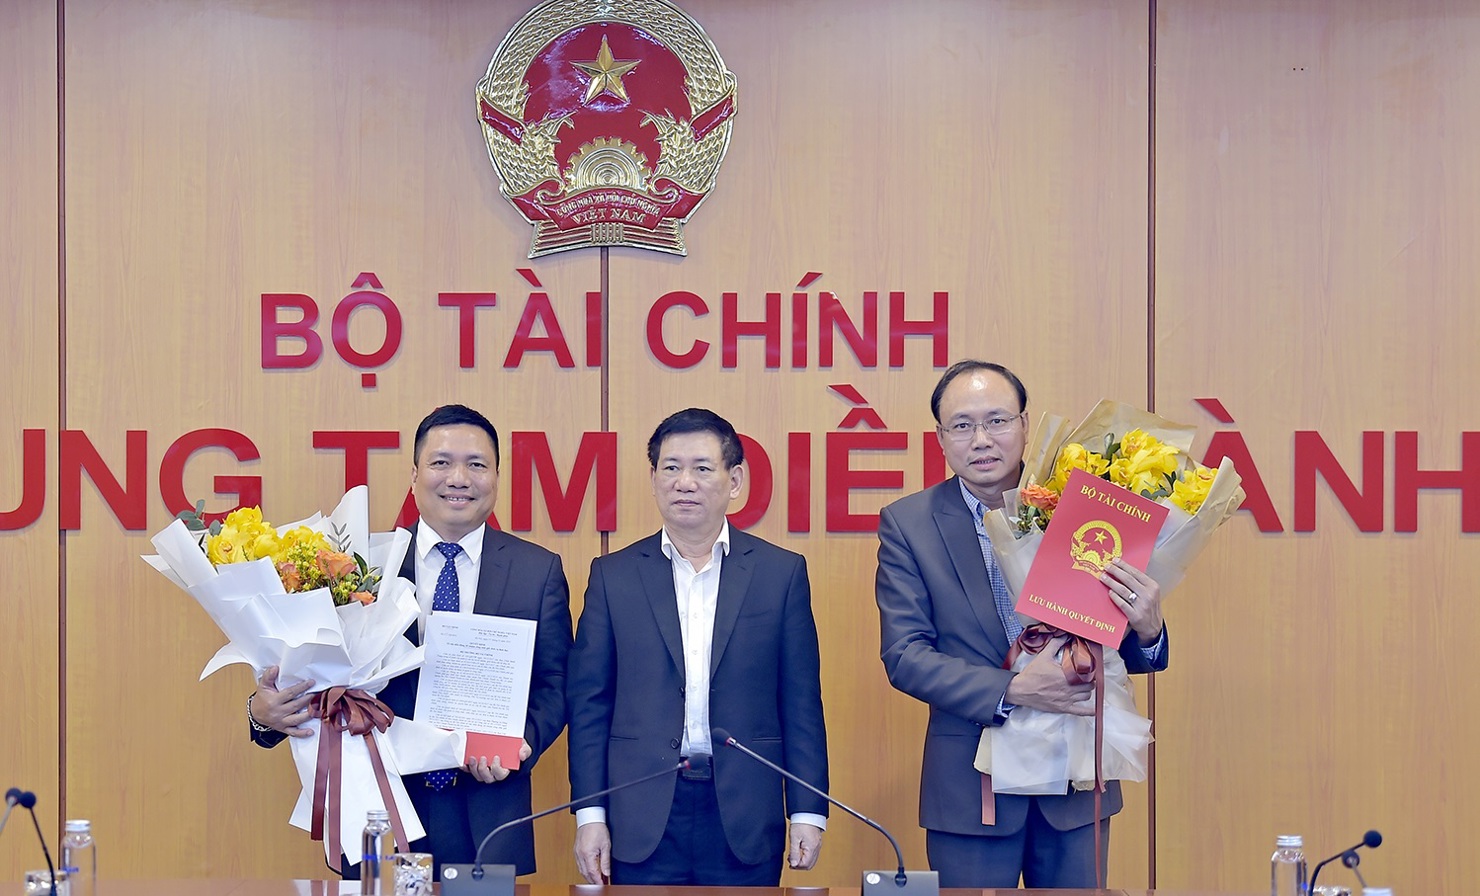 Bộ trưởng Hồ Đức Phớc trao quyết định cho ông Phạm Văn Tình và ông Nguyễn Thanh Bình.